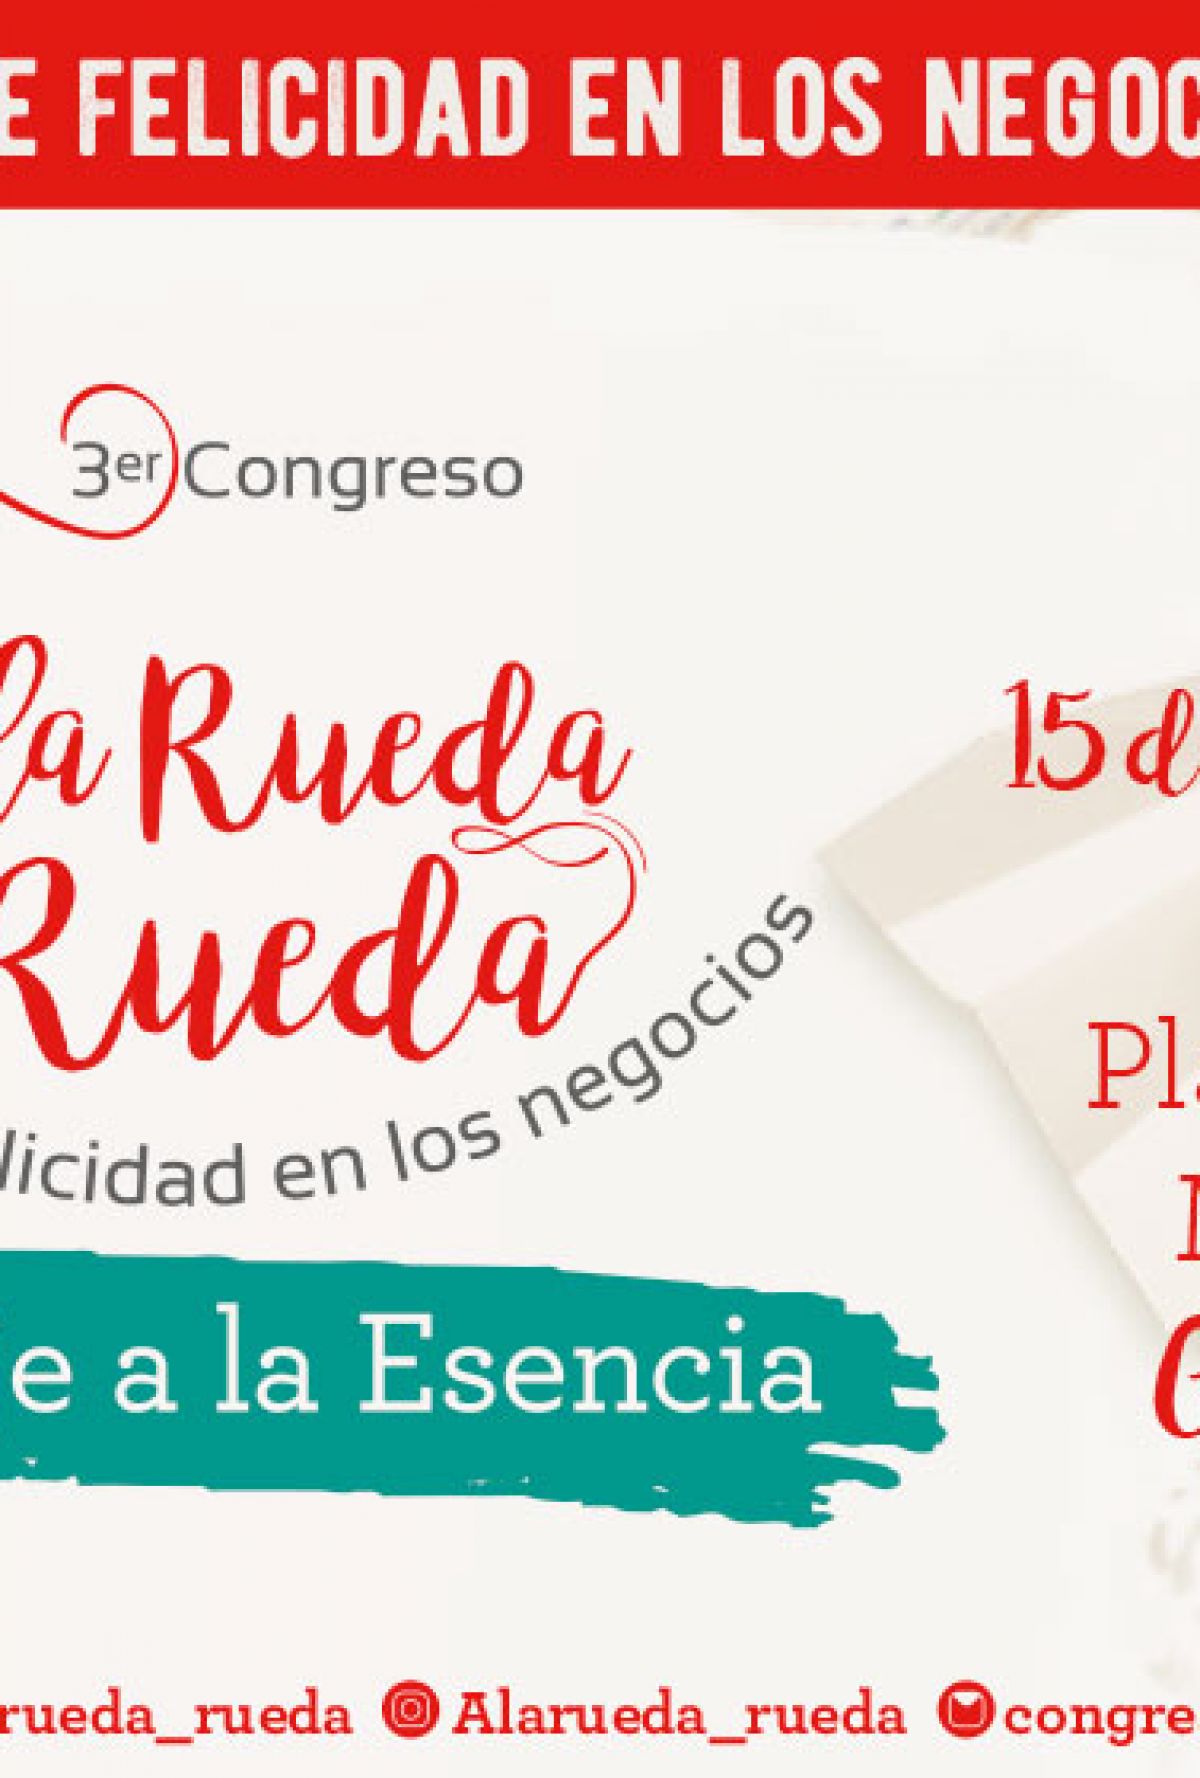 3° Congreso A la Rueda Rueda - un giro de felicidad en los negocios 